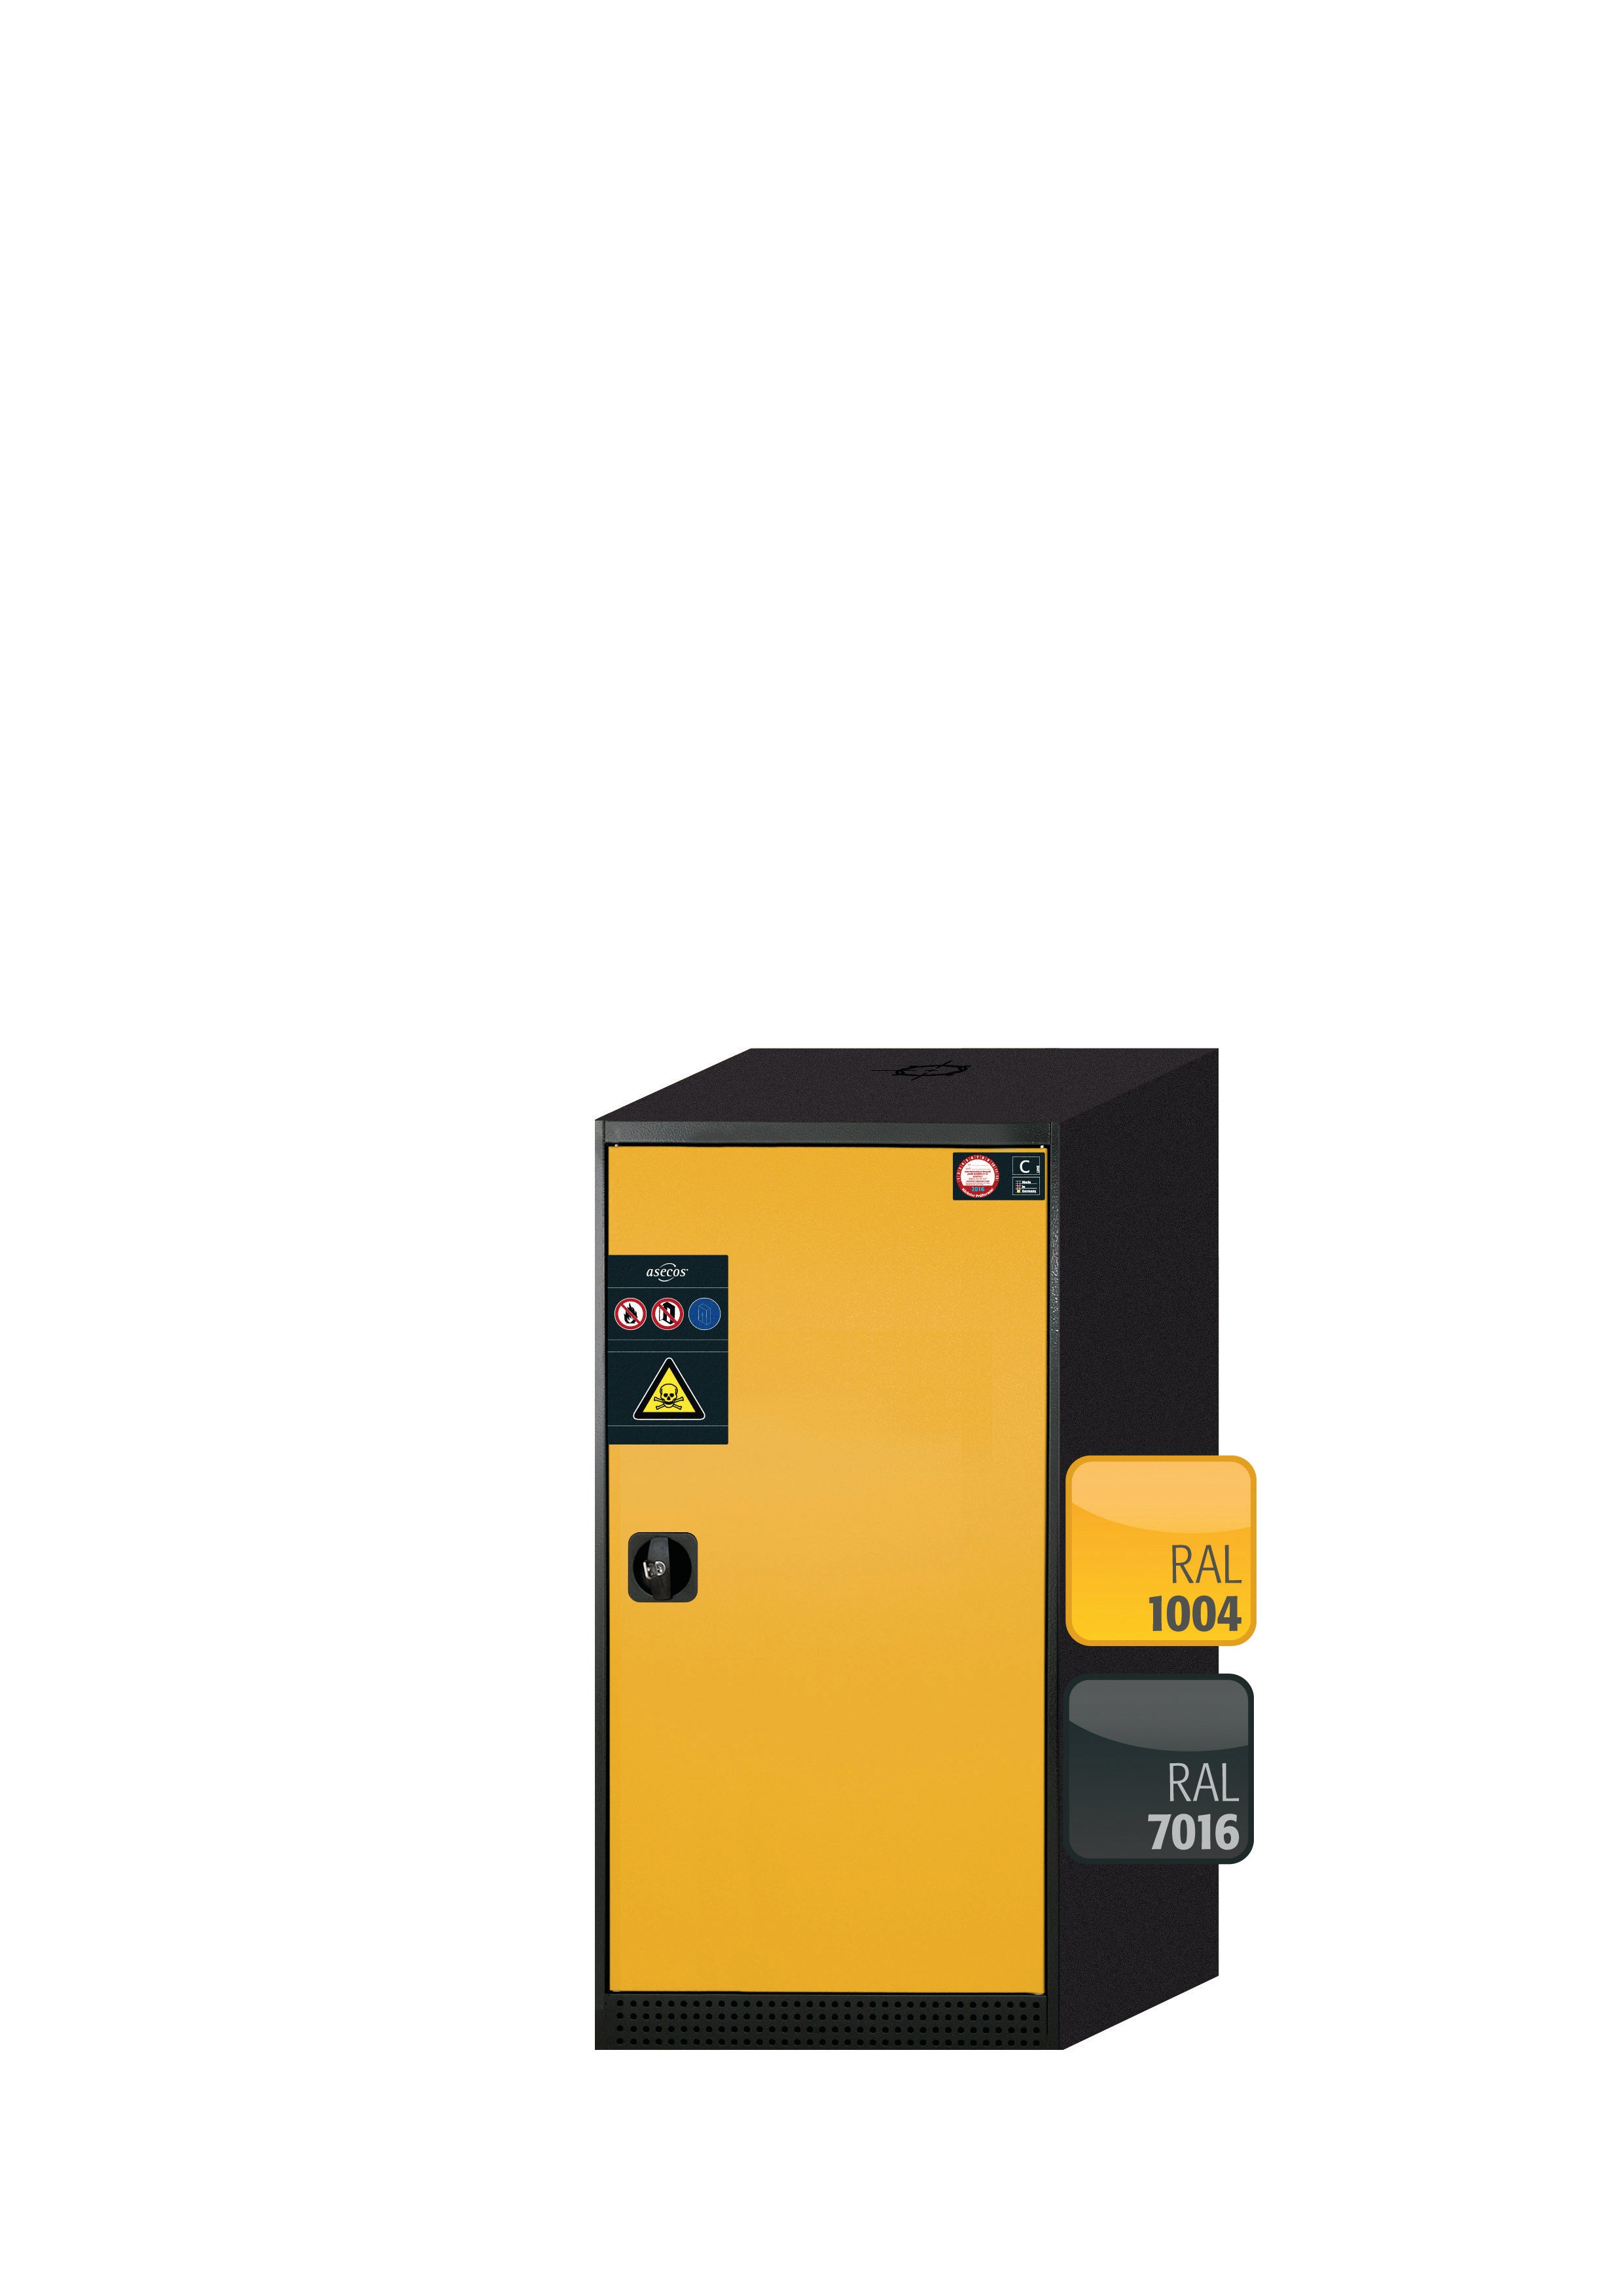 Armoire chimique CS-CLASSIC modèle CS.110.054.R en jaune sécurité RAL 1004 avec 2 étagères coulissantes AbZ (tôle d'acier/polypropylène)